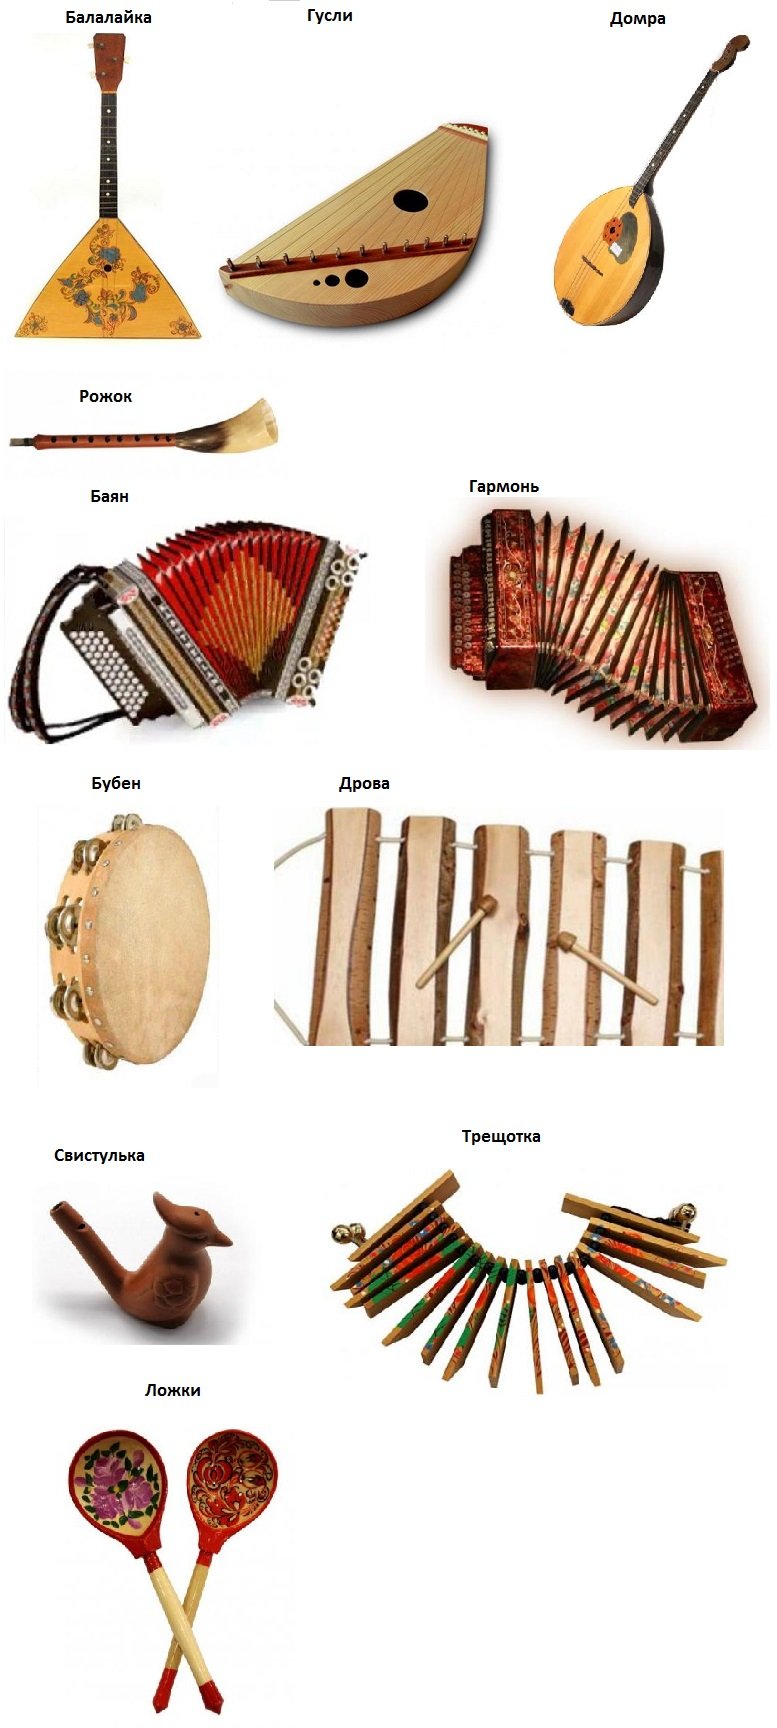 Особенности деревянных музыкальных инструментов